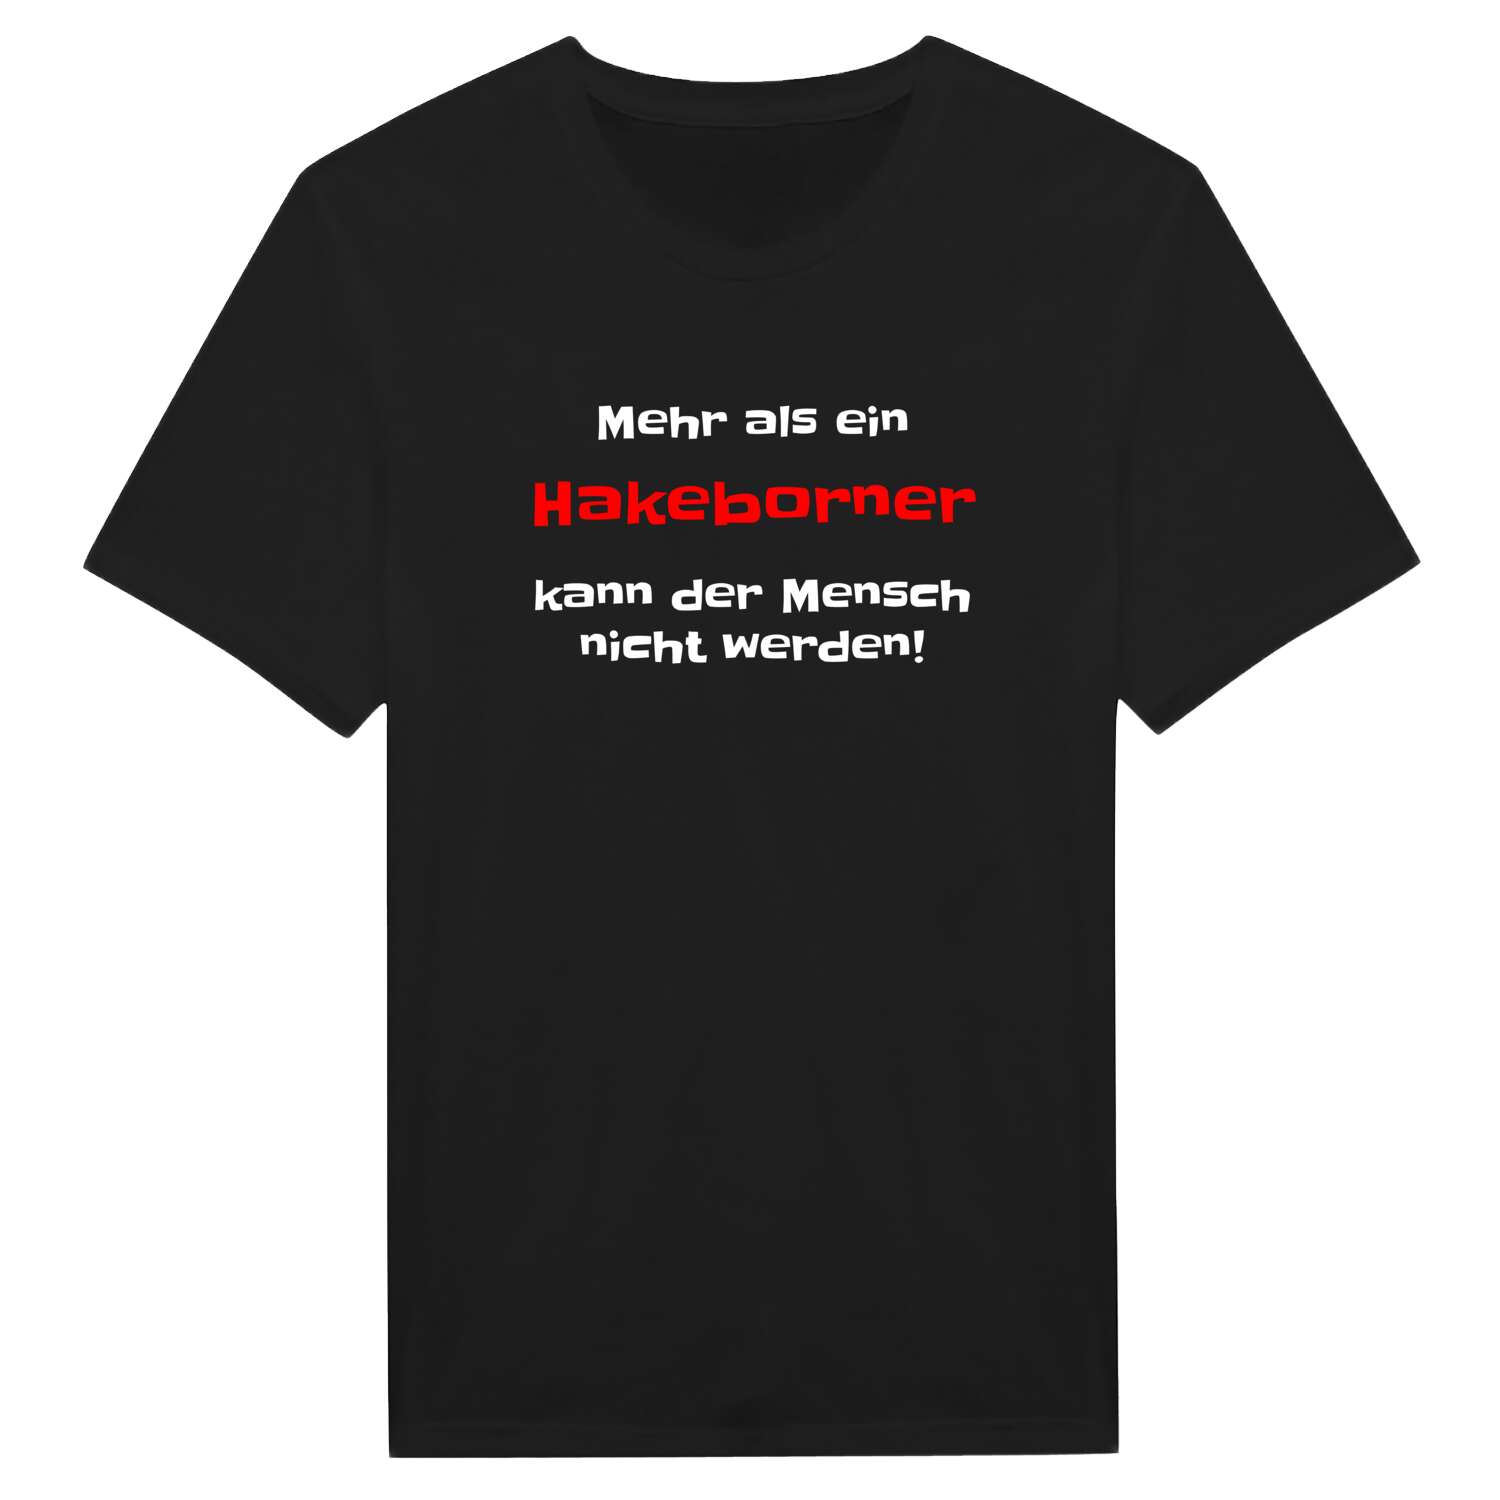 Hakeborn T-Shirt »Mehr als ein«